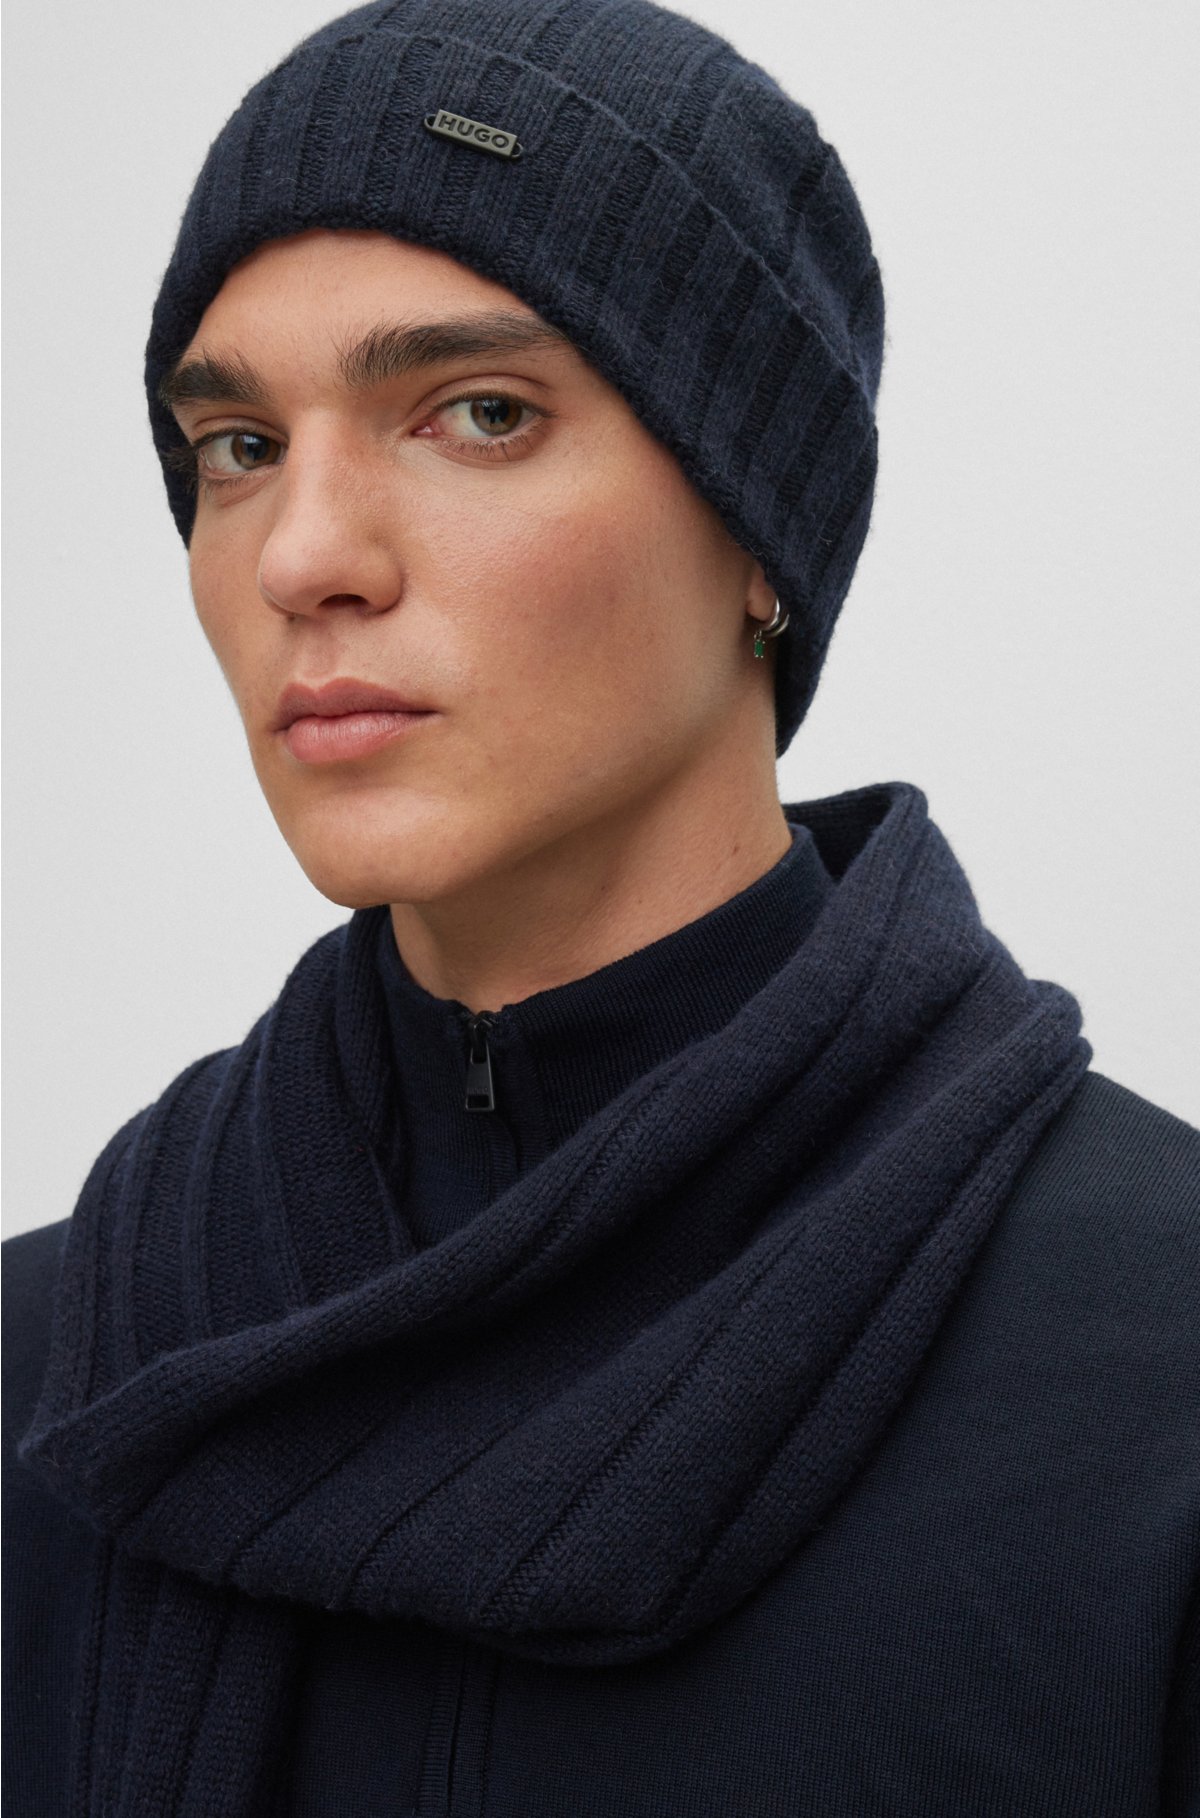 Ensemble d'hiver tricoté pour homme, écharpe, bonnet, gants - Marron